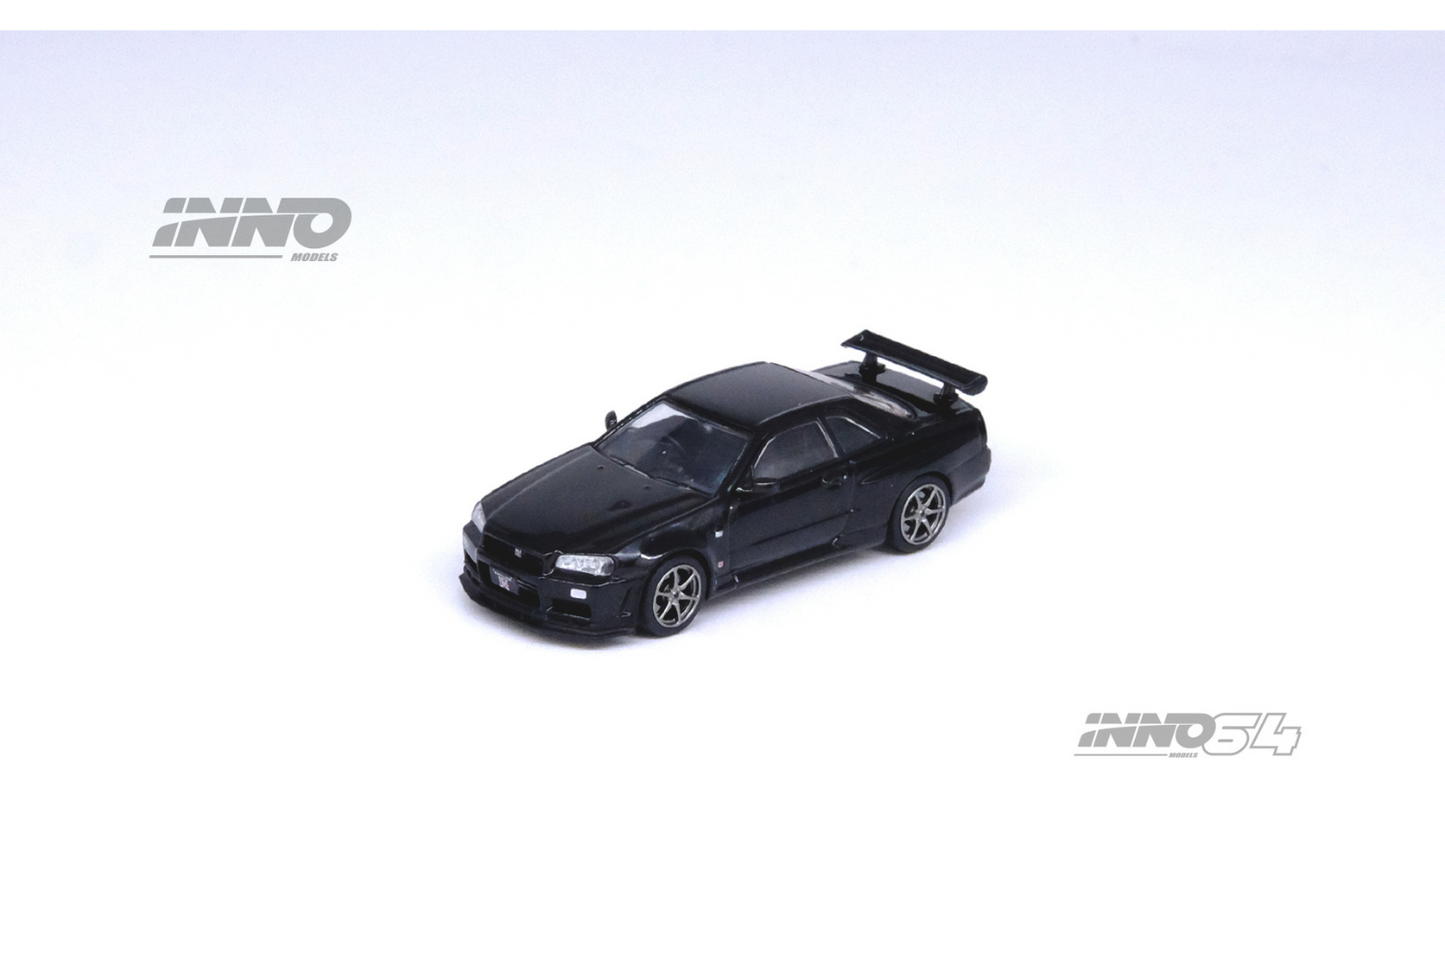 Inno64 Nissan Skyline GT-R (R34) Nismo V-Spec II In Black